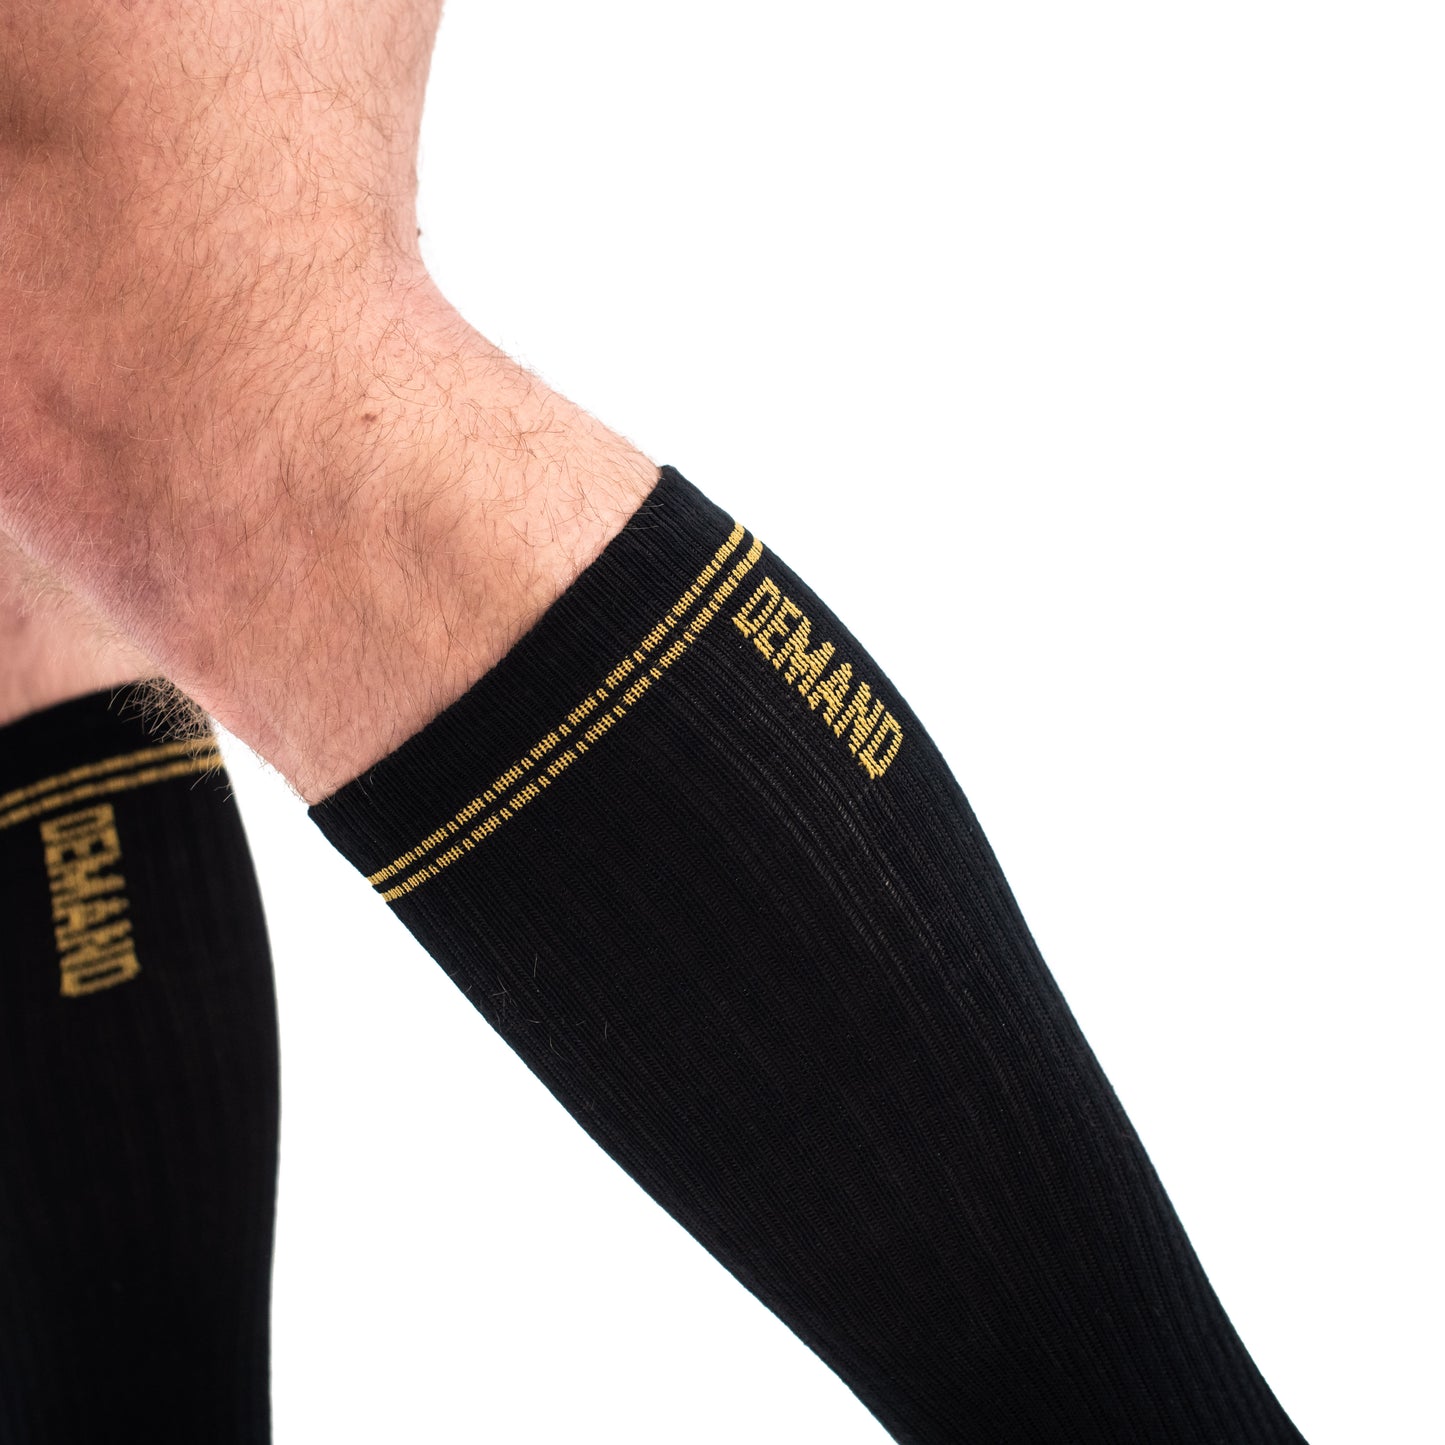 
                  
                    Deadlift Socks - Gold Standard
                  
                